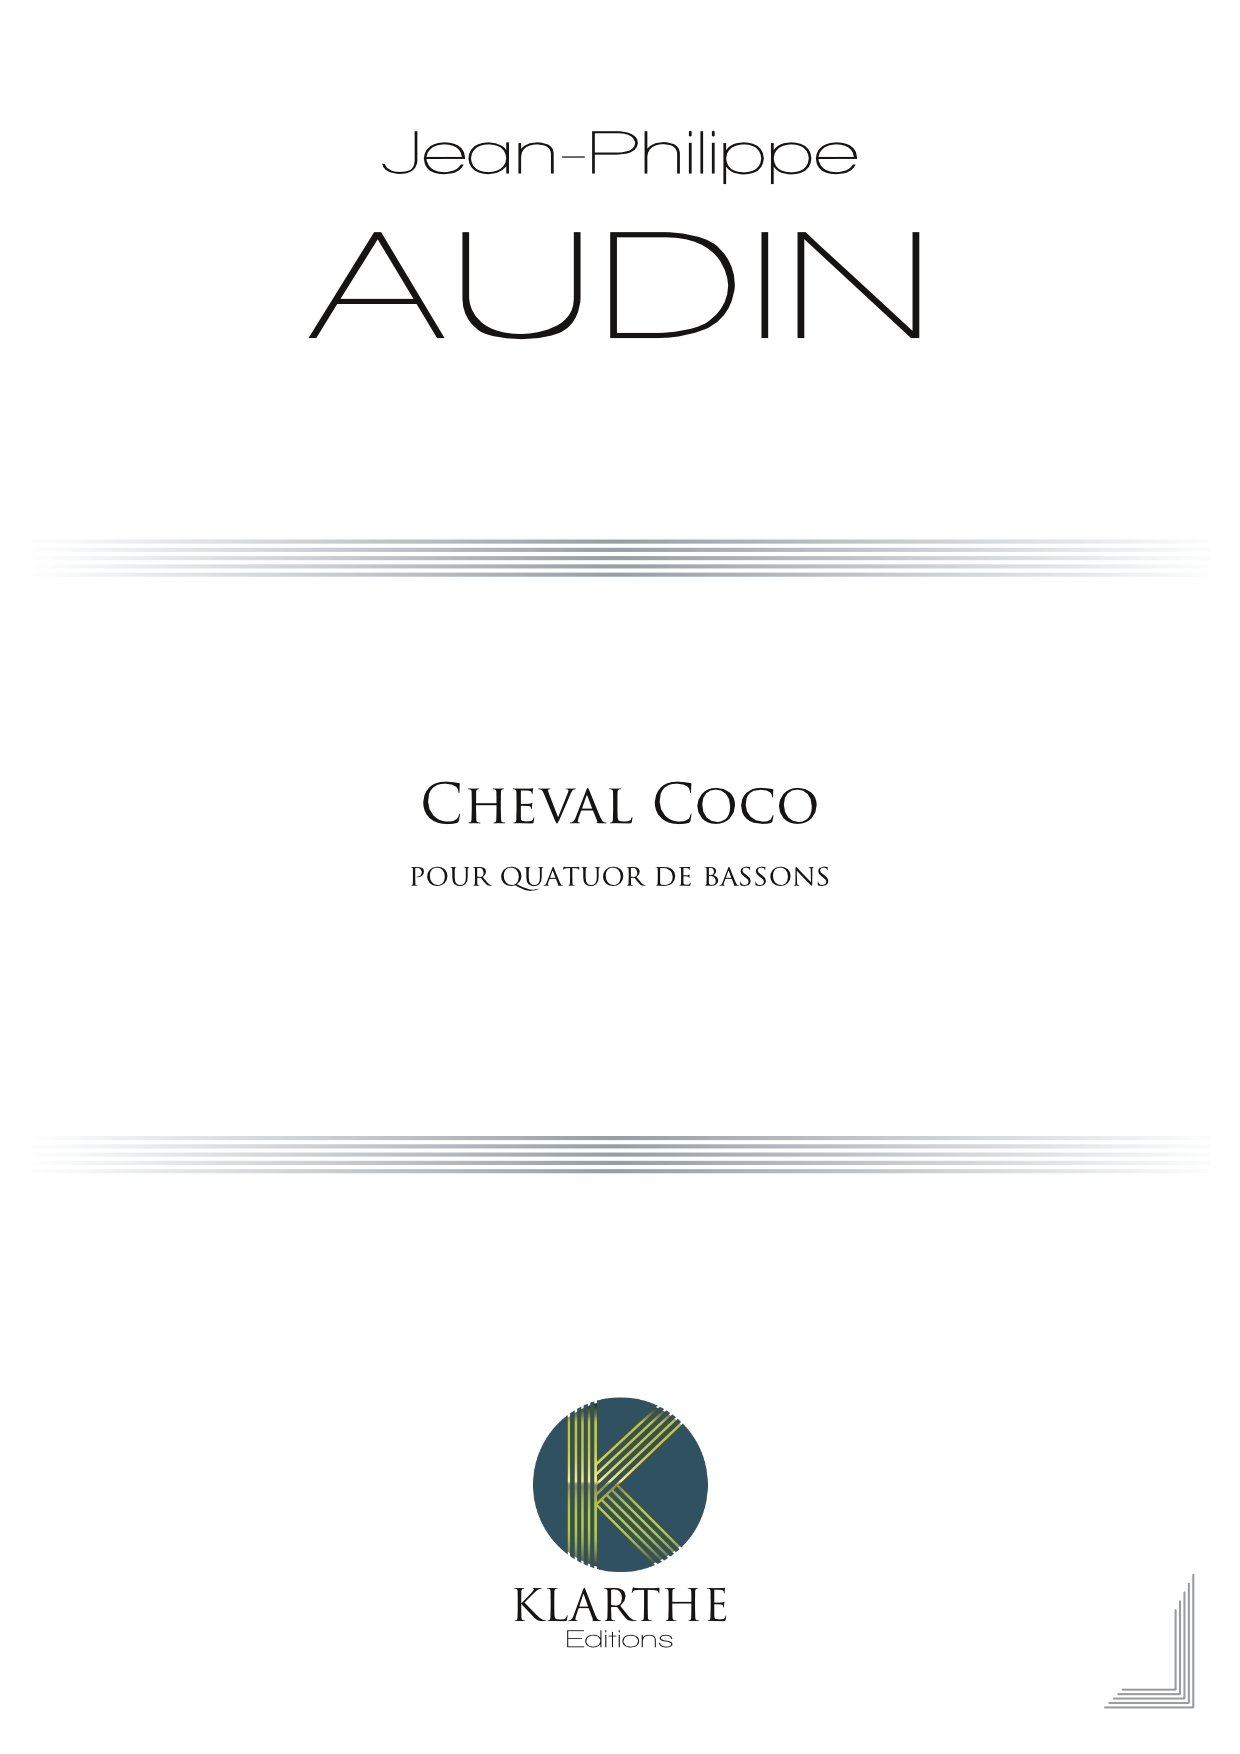 Cheval coco (AUDIN JEAN-PHILIPPE)